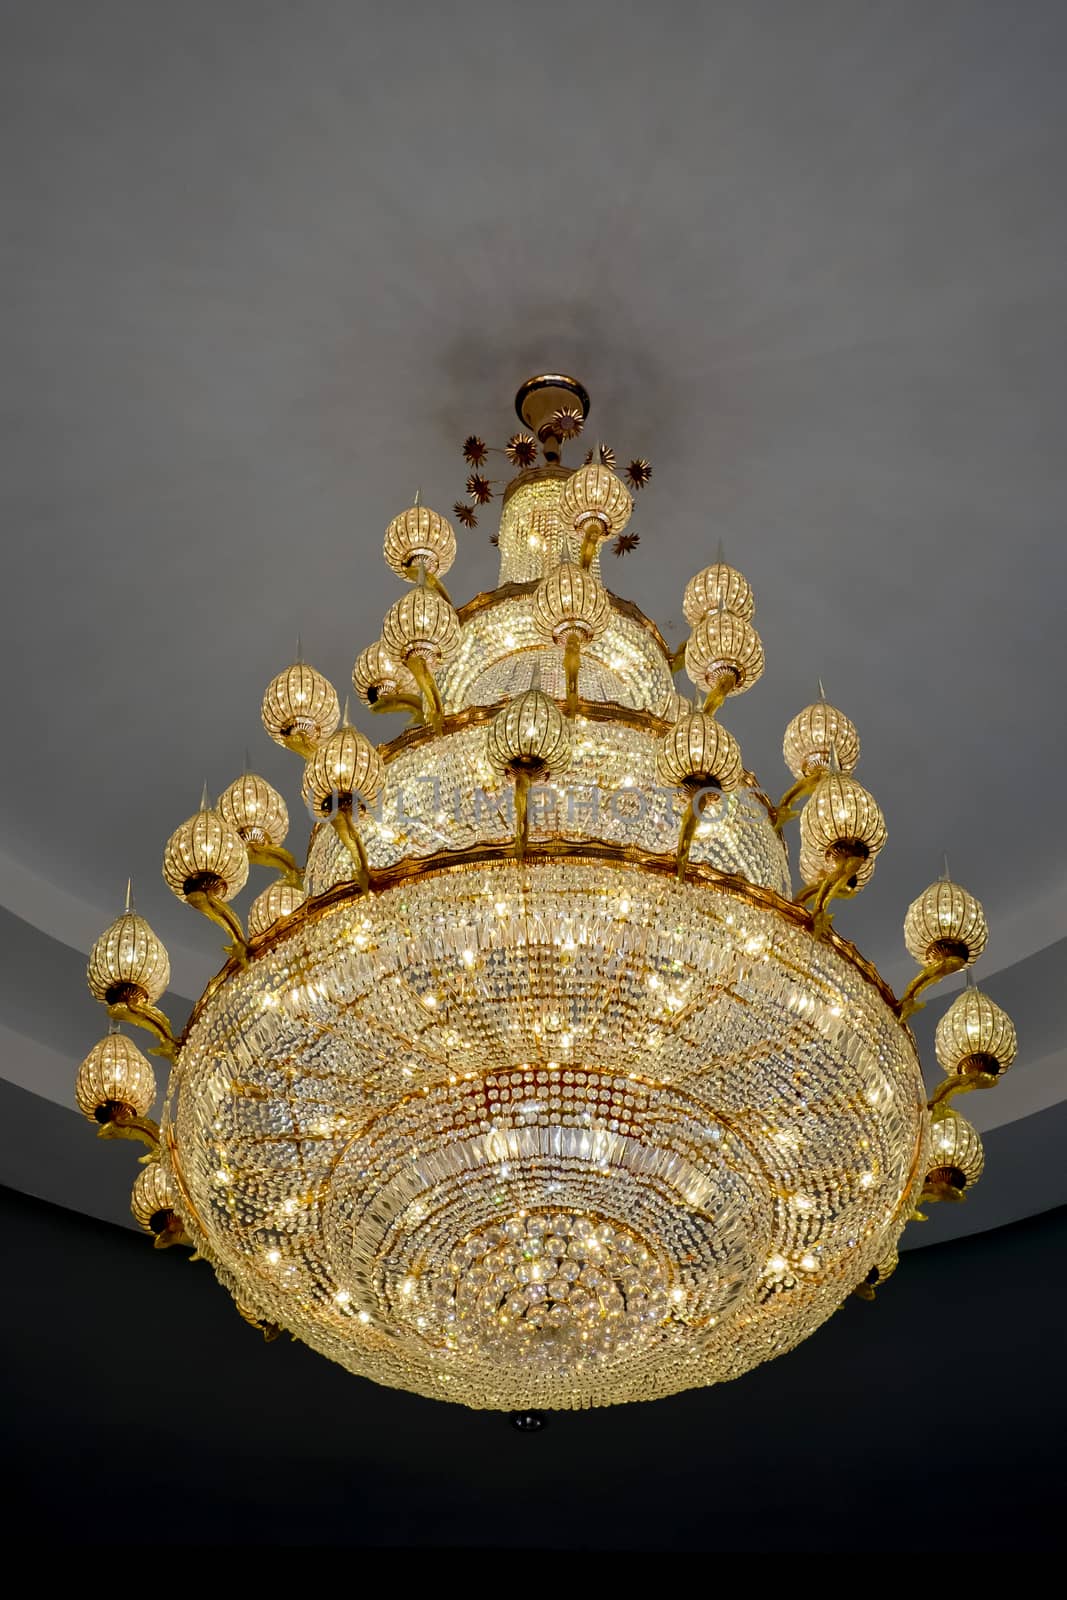 Chrystal chandelier by art9858